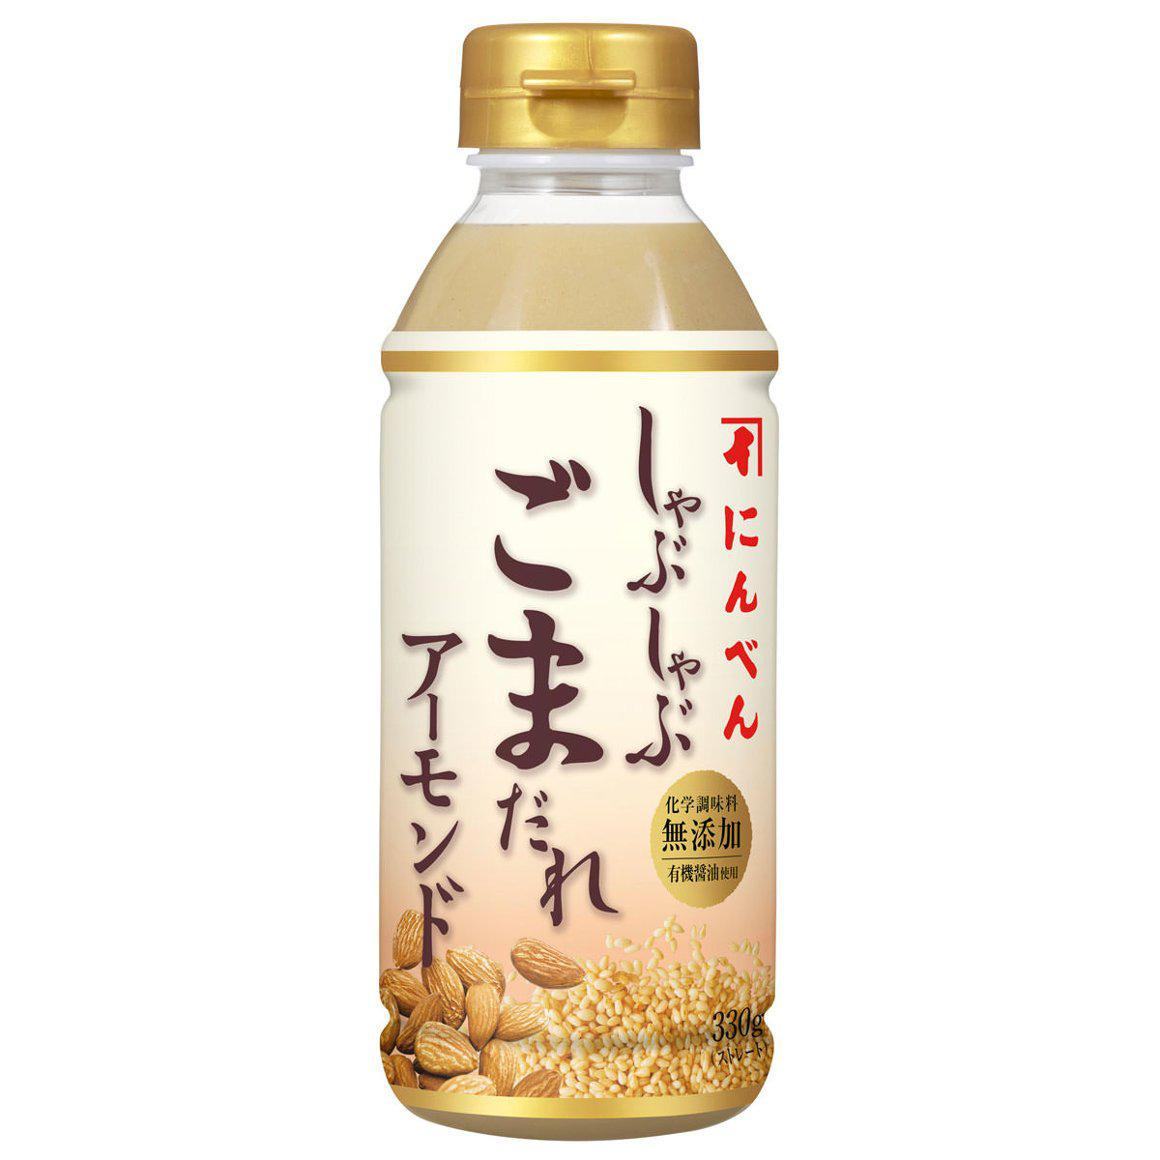 Ninben Gomadare Japanese Sesame Sauce for Shabu-shabu 330g